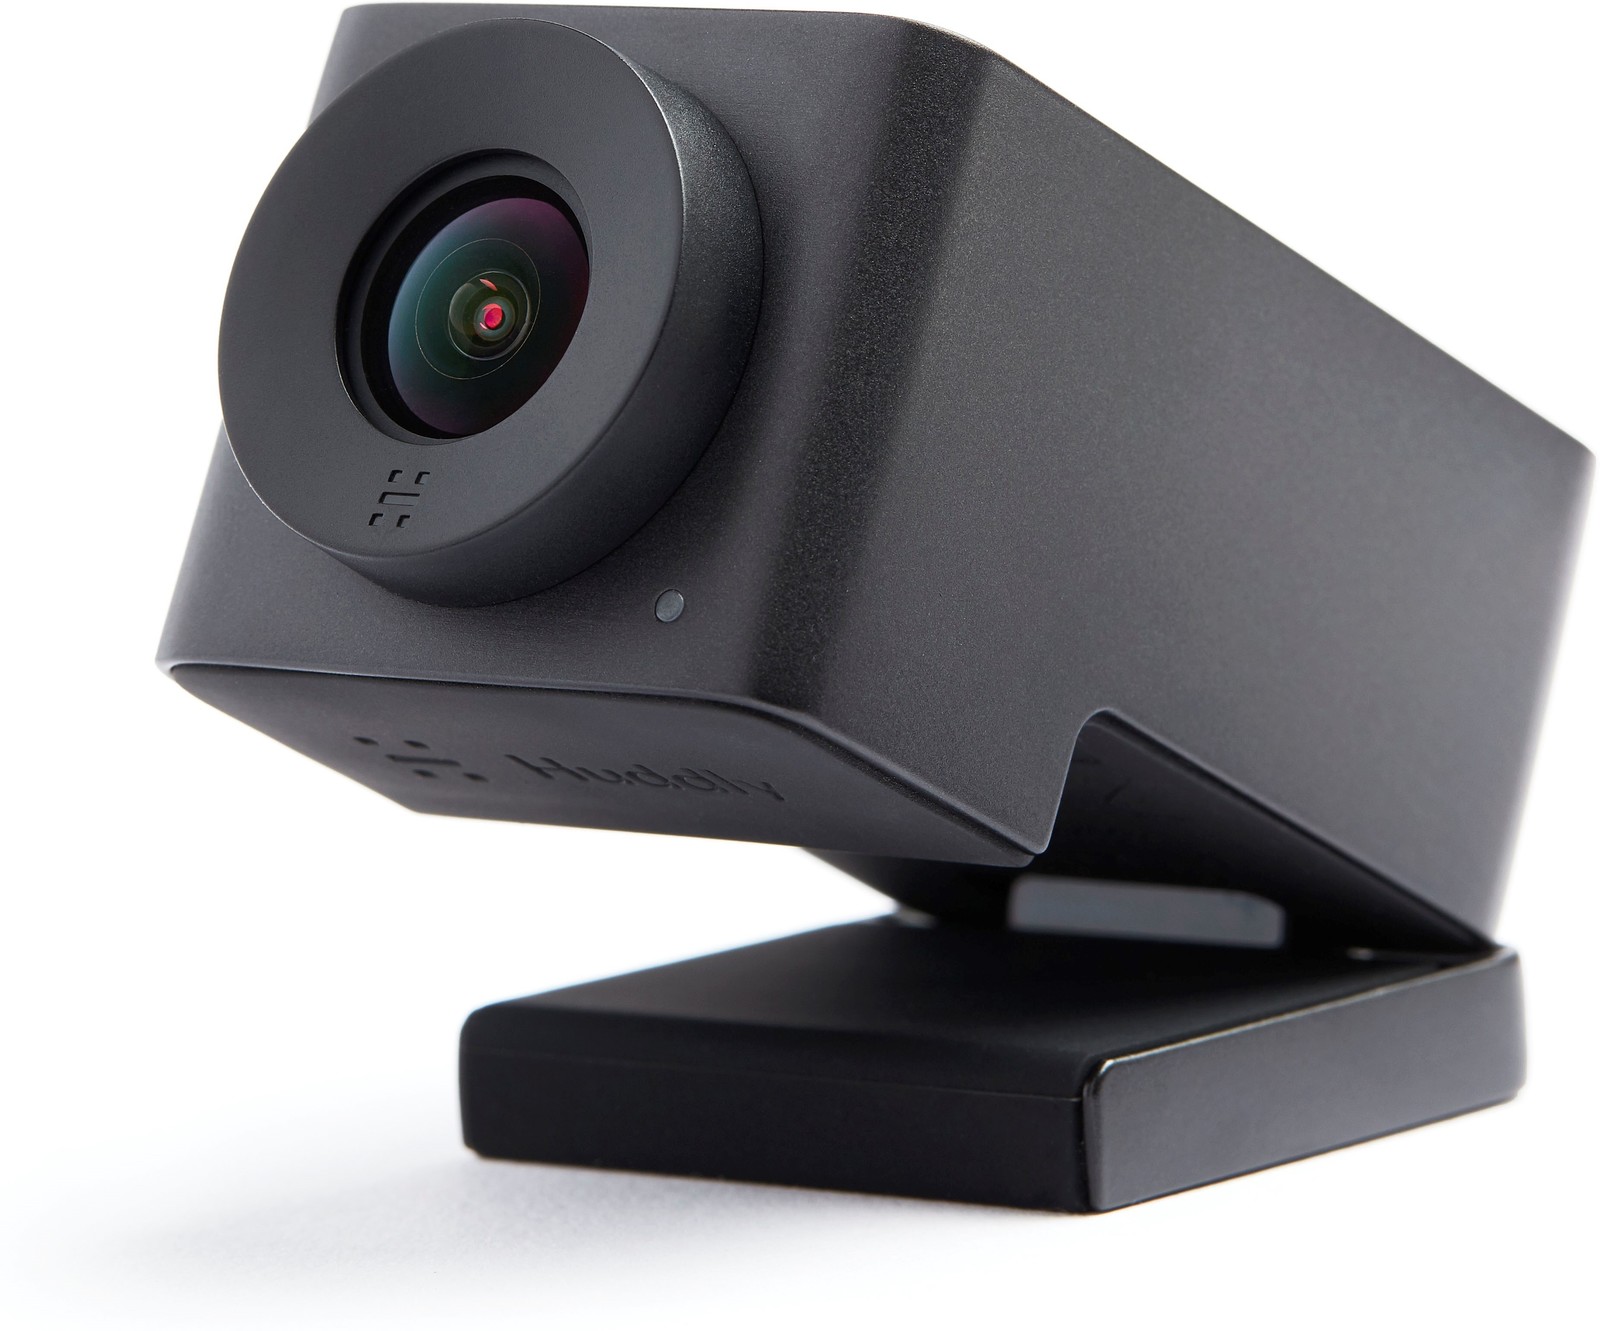 Huddly IQ Konferenzraum - Videokonferenzkamera mit Mikrofon - mit künstlicher Intelligenz für smartere Meetings - kleine und mittelgroße Räume - Schwarz